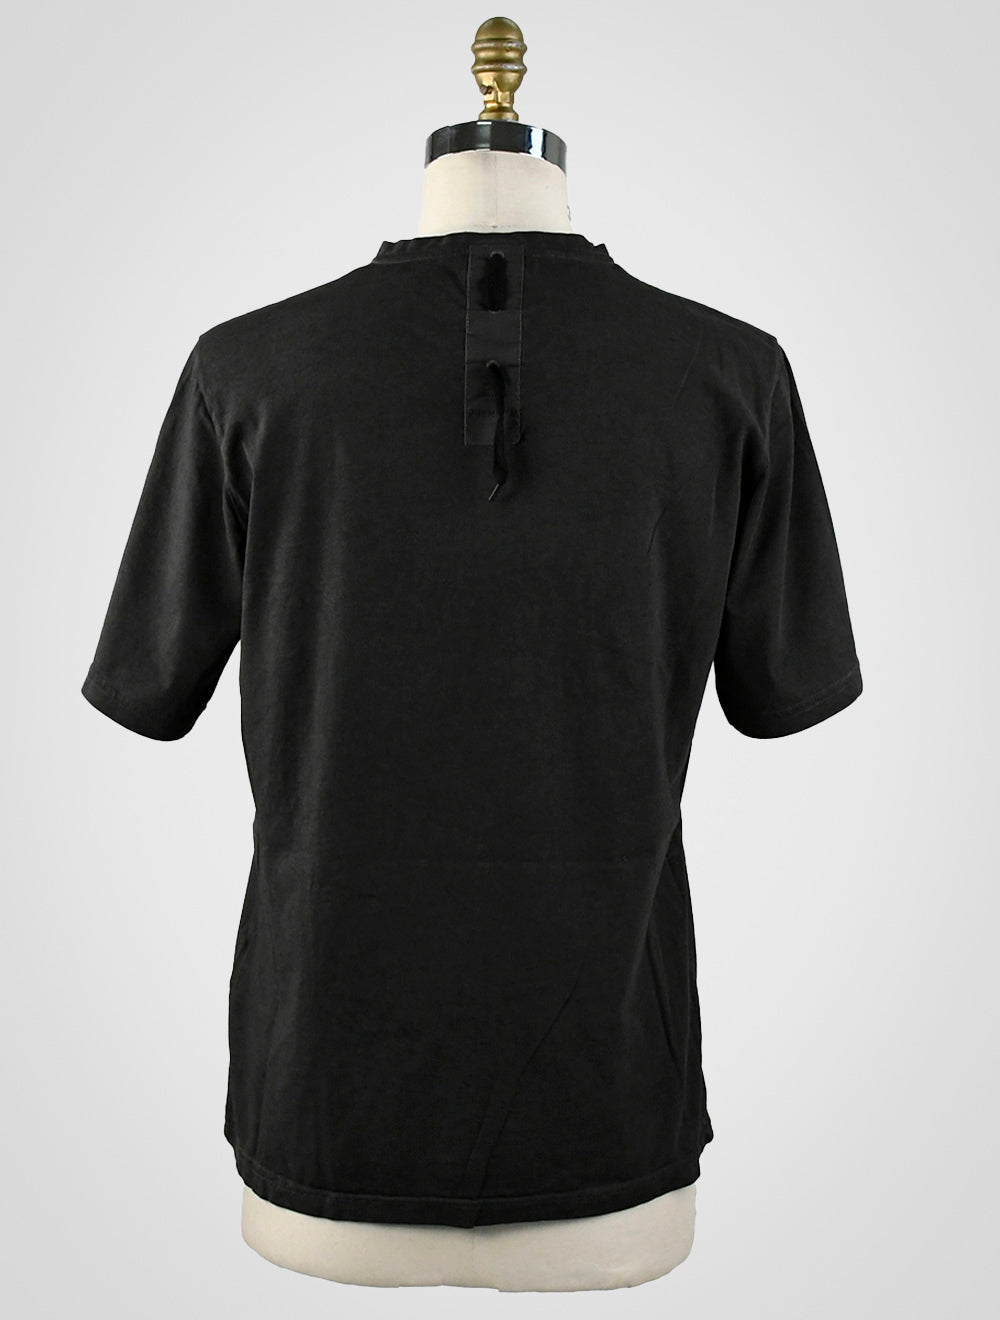 Camiseta Premiata Algodón Negro